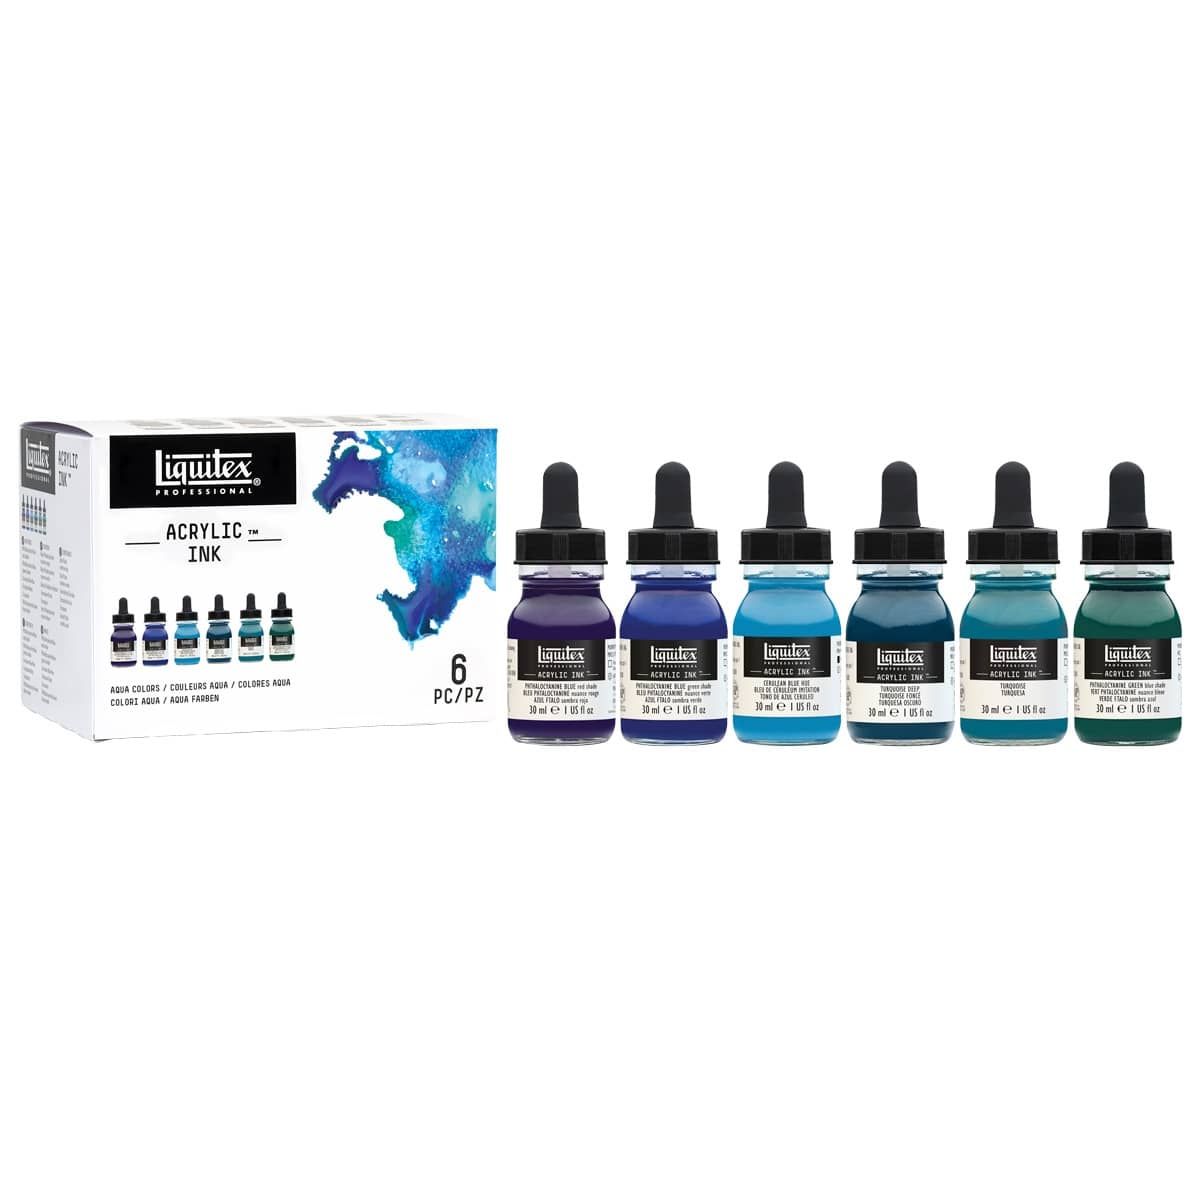 Liquitex Professional Acrylic Ink 30 ml Set Of 6 Aqua Colors